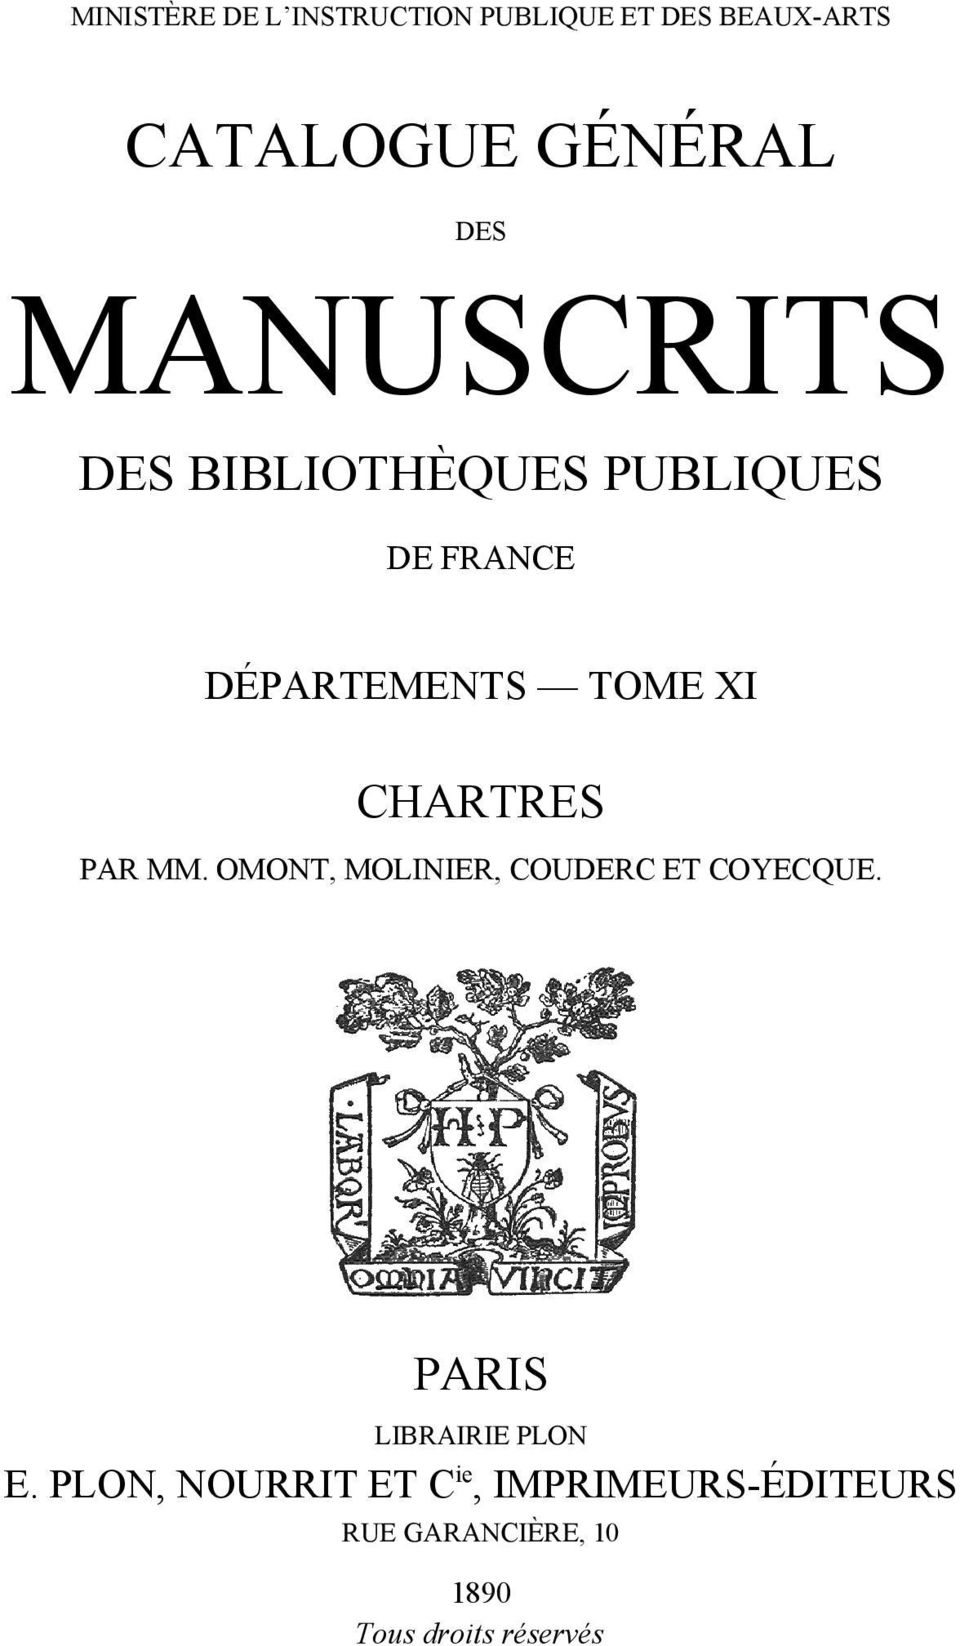 CHARTRES PAR MM. OMONT, MOLINIER, COUDERC ET COYECQUE. PARIS LIBRAIRIE PLON E.